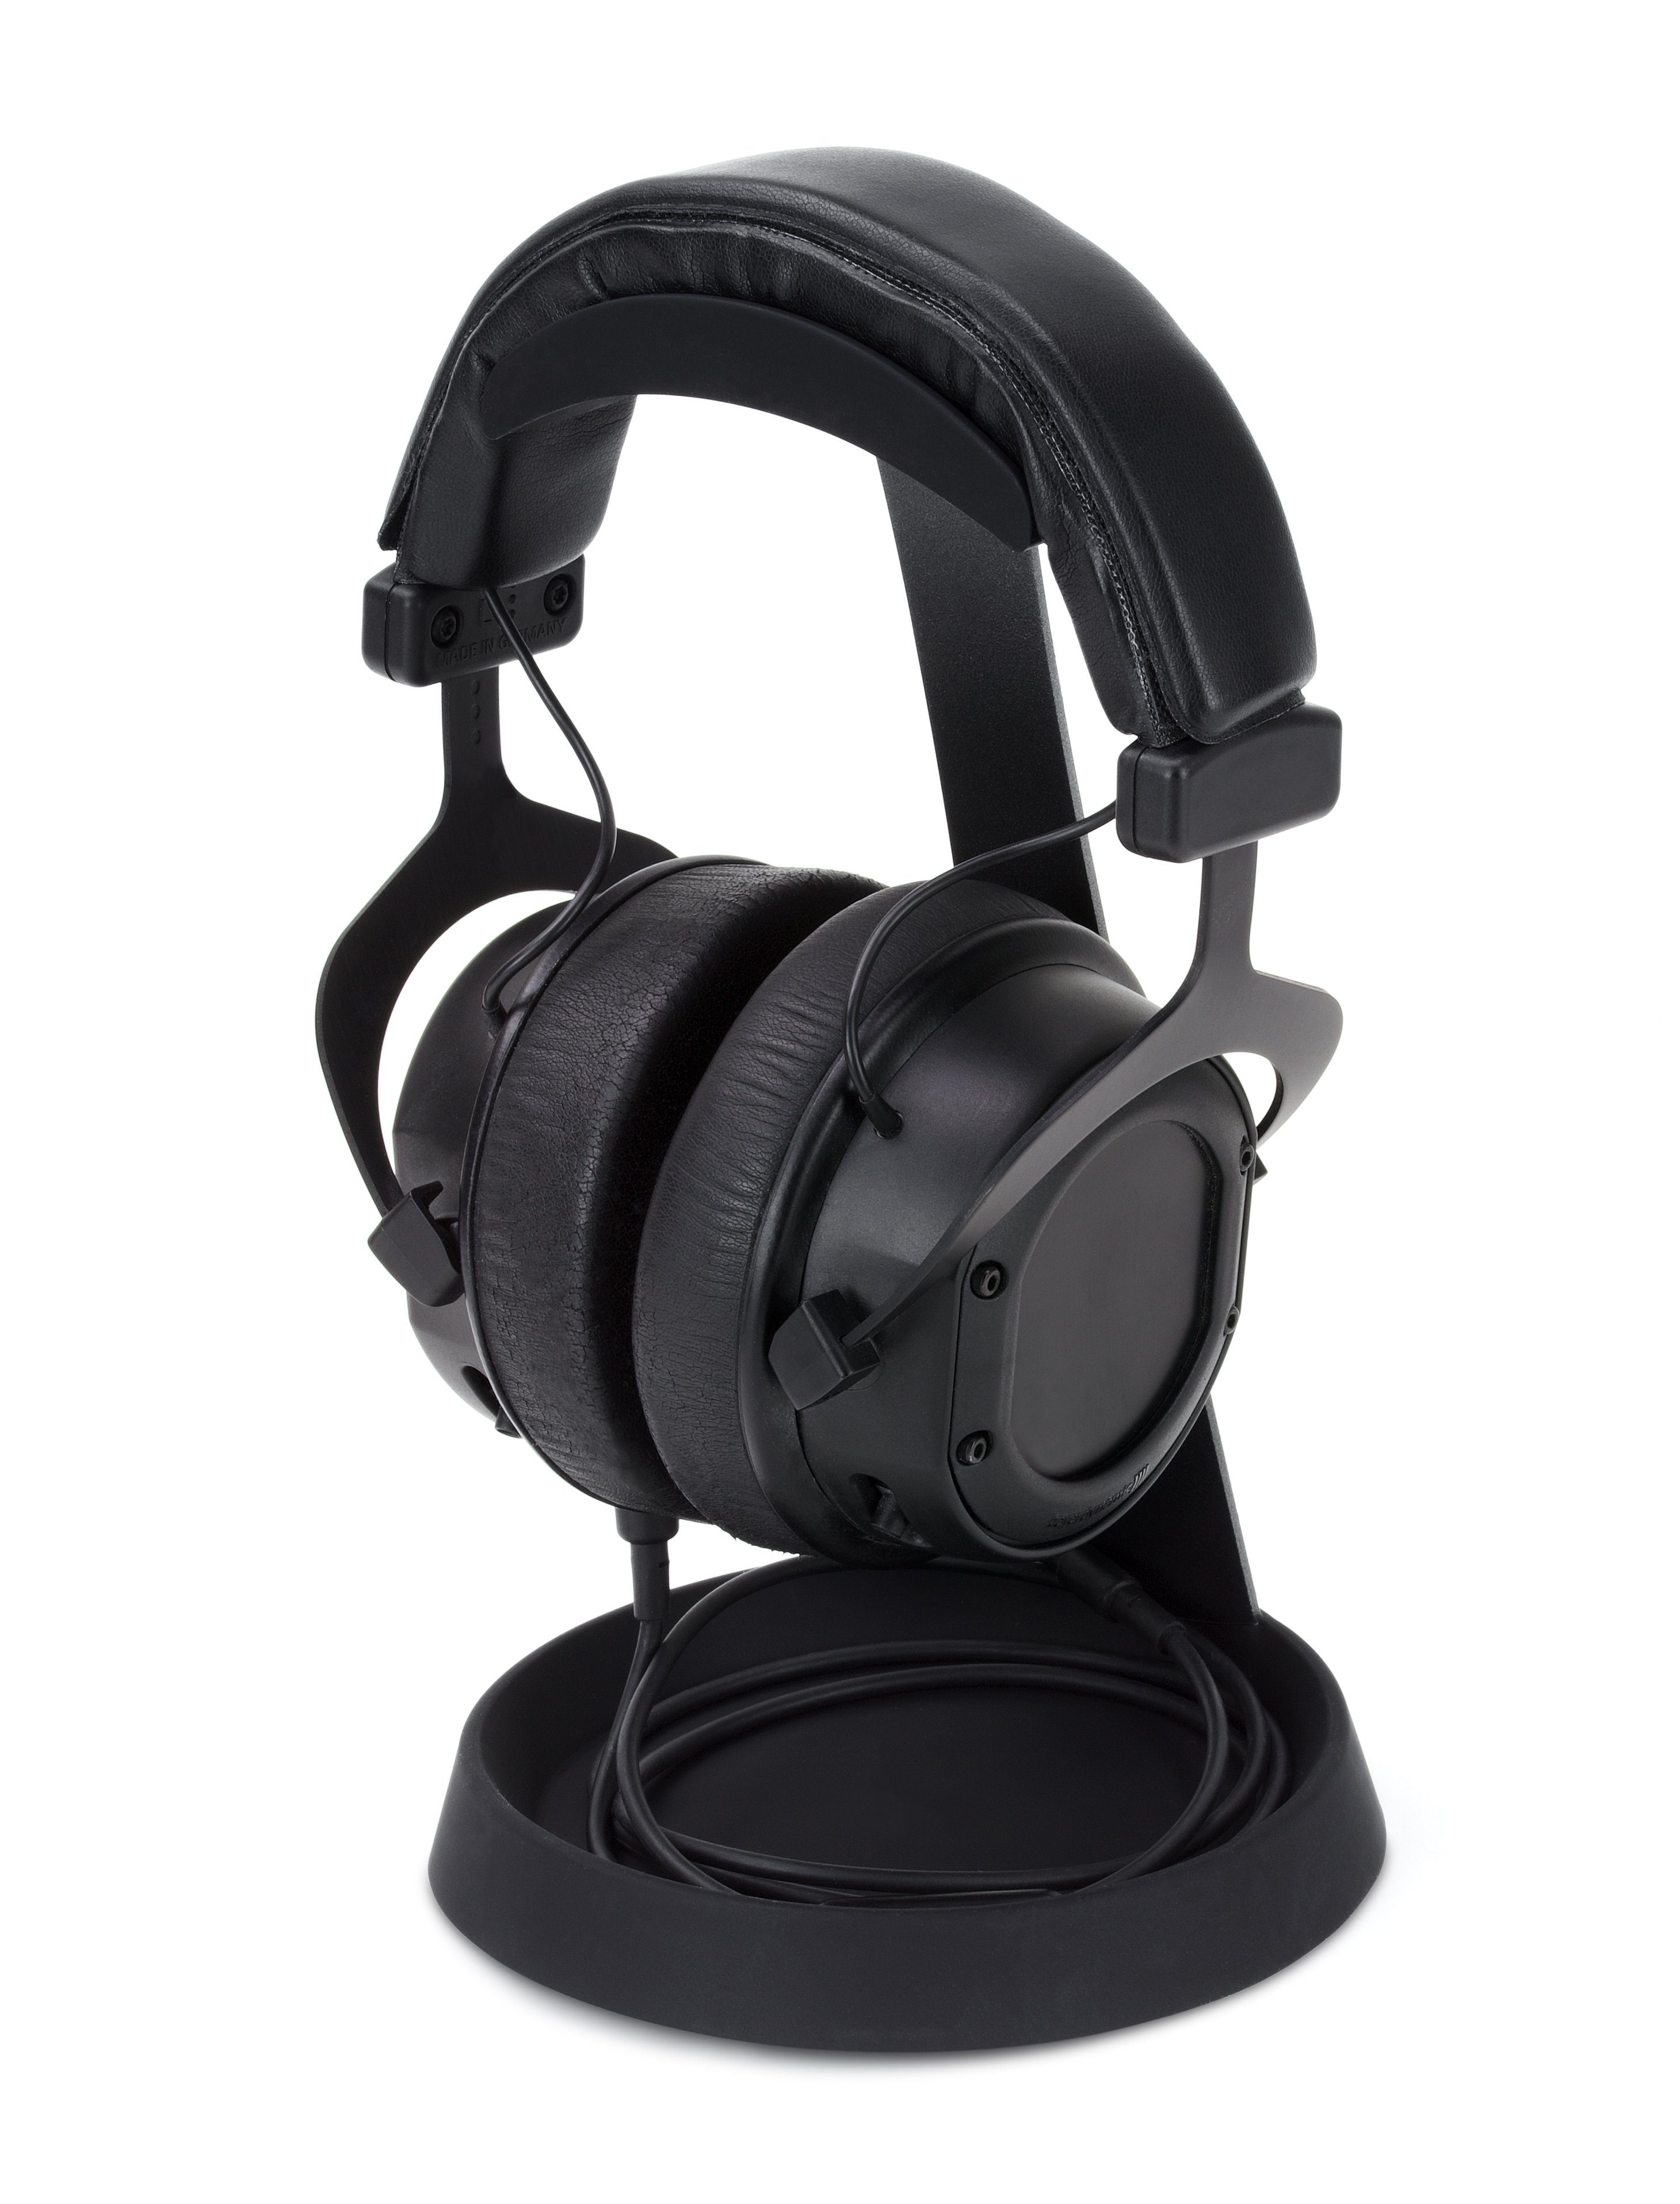 Gaming-Headsets, Kabel-Ablage, Kopfhörerständer, Dynavox Metall) KH-1000 Silikon-Auflage, (für